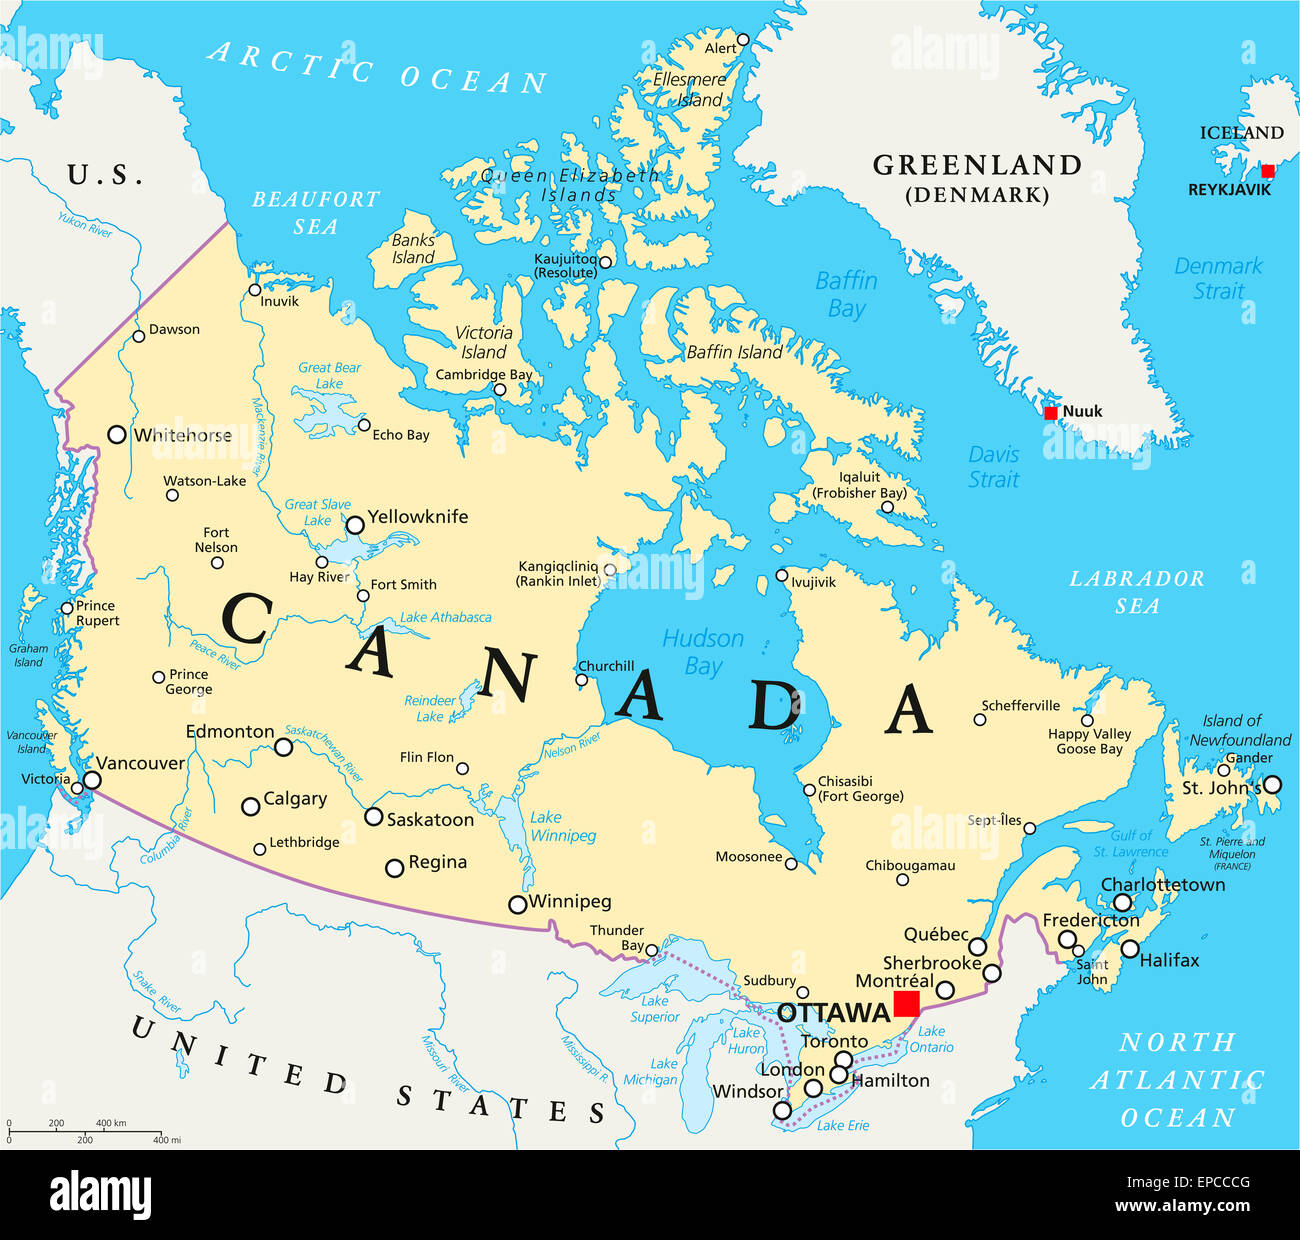 Kanada politische Karte mit Hauptstadt Ottawa, Landesgrenzen, wichtige  Städte, Flüsse und Seen. Englische Beschriftung und Skalierung  Stockfotografie - Alamy